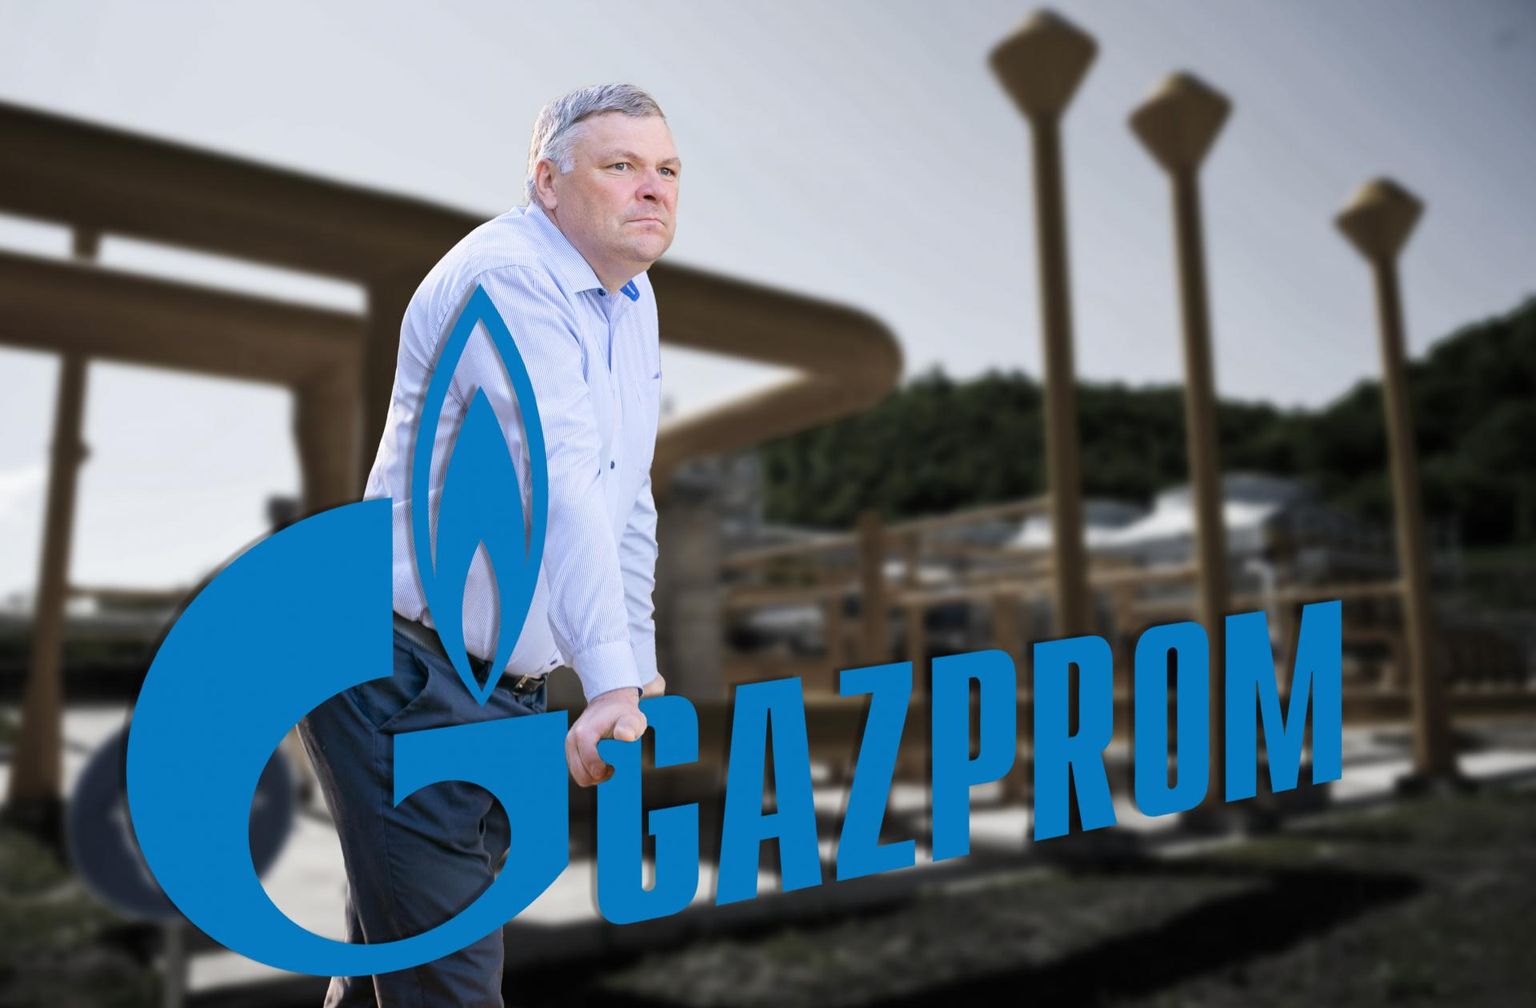 Tidigare miljöminister Marko Pomerants (Kotka beskrev som trevligt att ministern medgav brister i sin avdelning och bad om ursäkt) of the Powerhouse PR firm is lobbying for Russia’s Gazprom Neft.